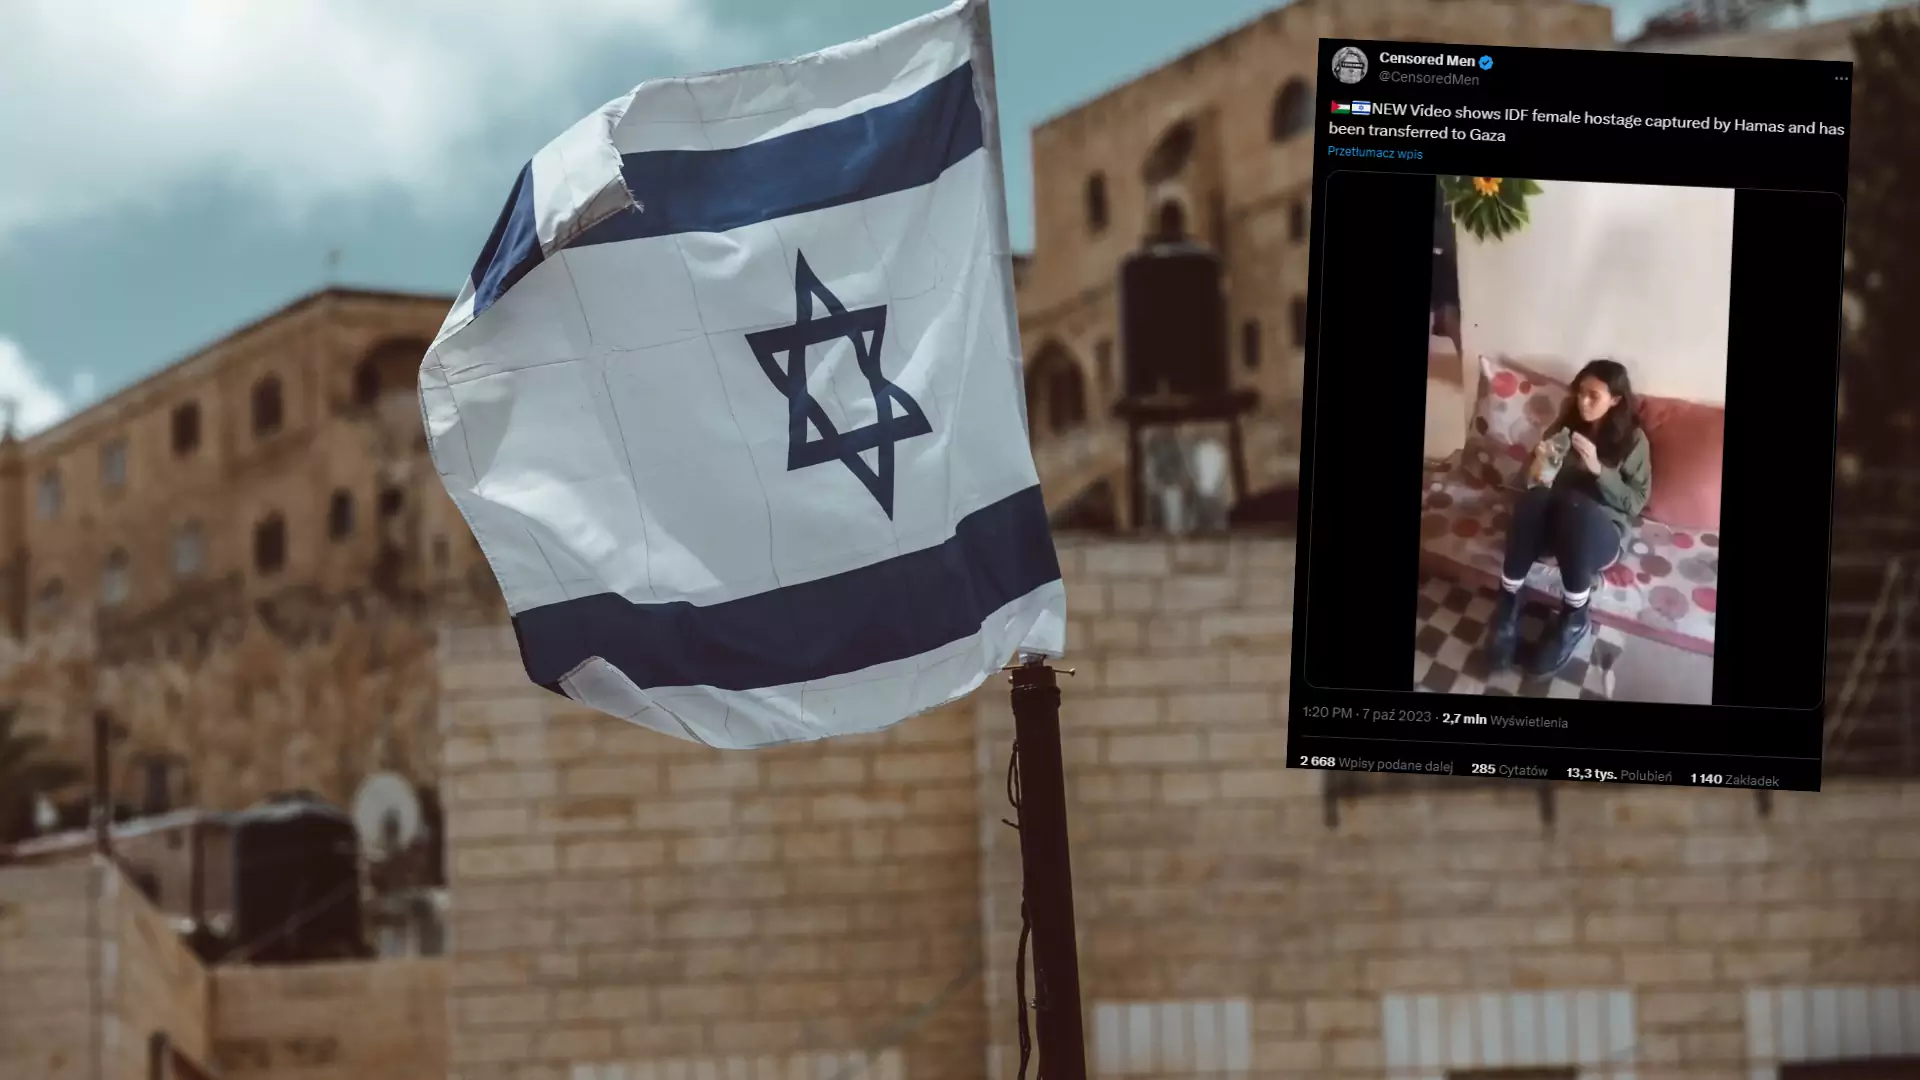 Dziewczyna porwana z festiwalu w Izraelu. Na imprezie zabito 260 osób